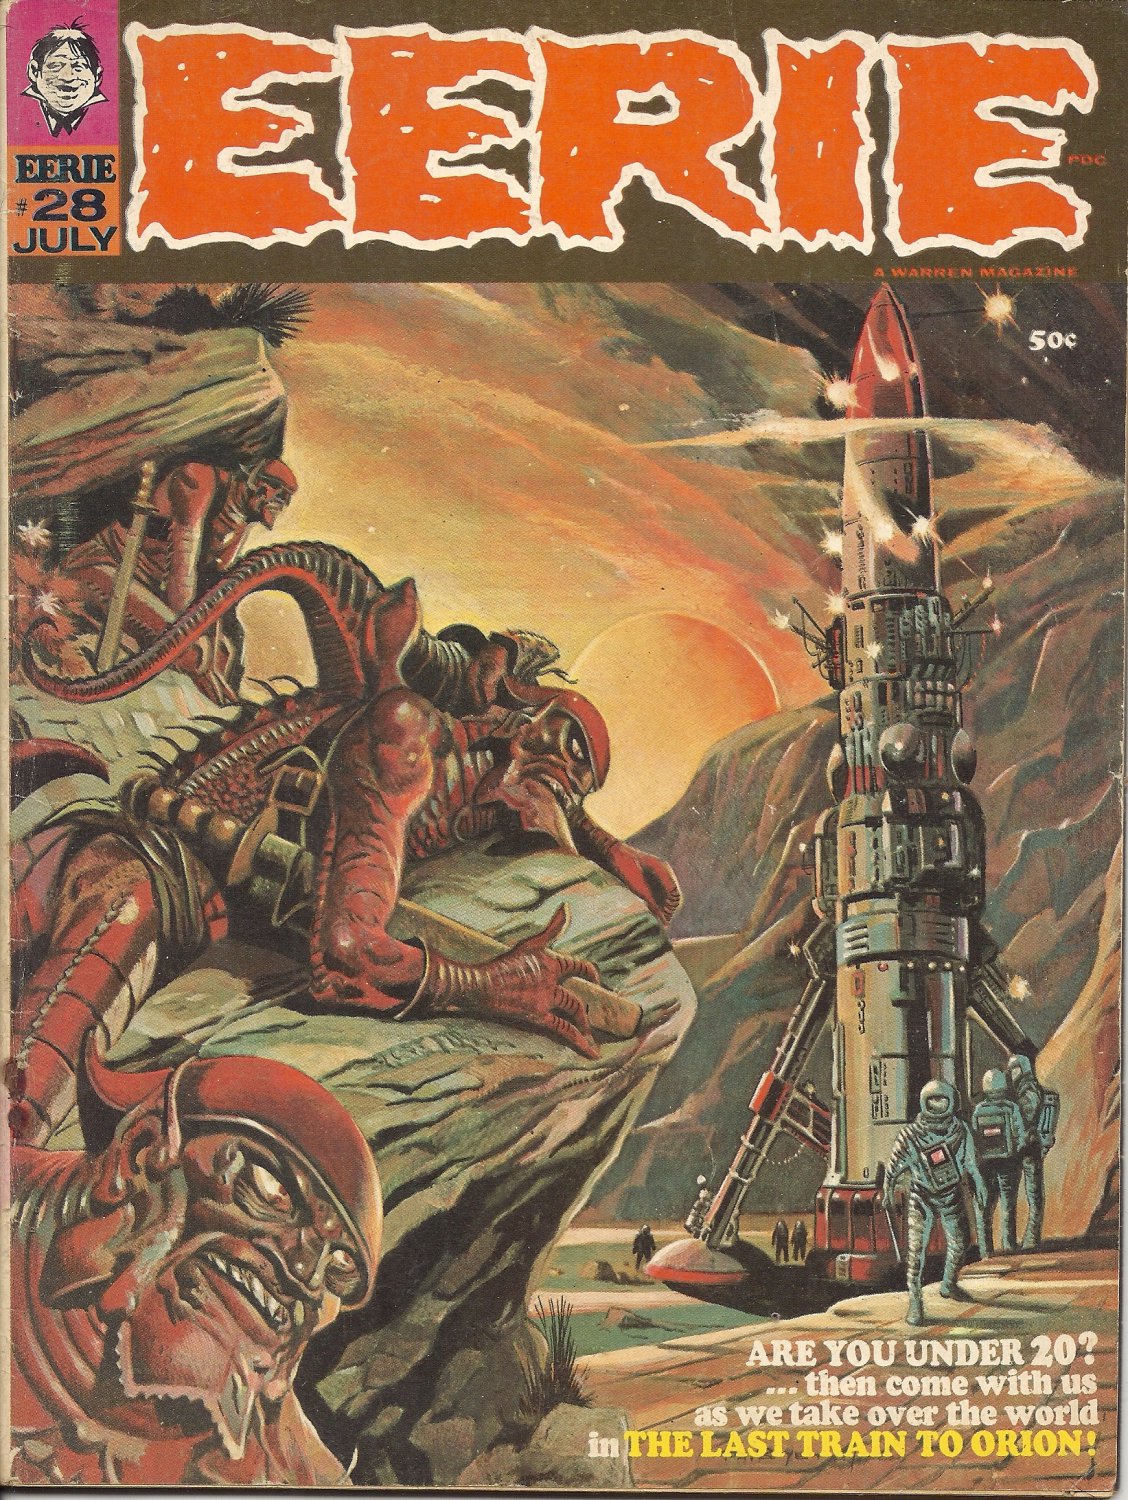 (CB-13) 1970 Vintage Warren comic book Magazine: Eerie #28